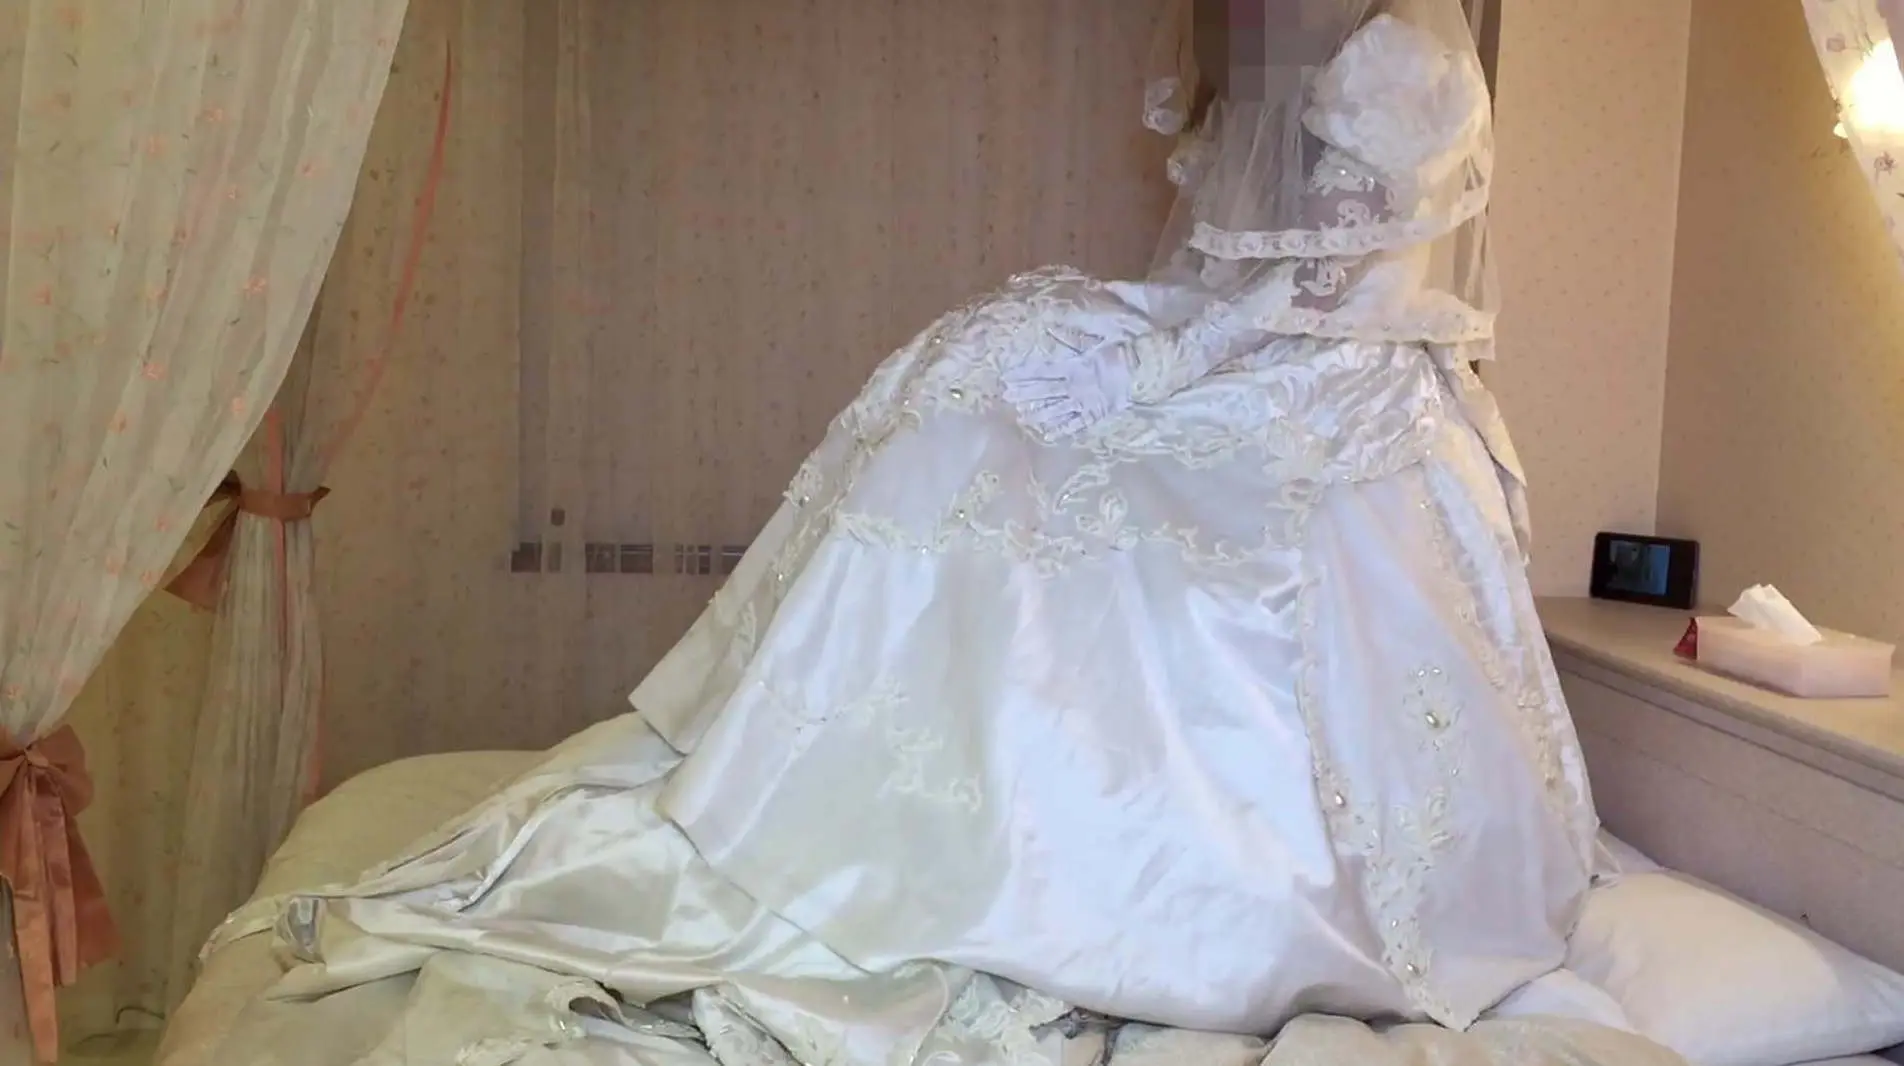 Ball Gown Blowjob - Blowjob Crossdresser Wedding Dress | Anal Dream House